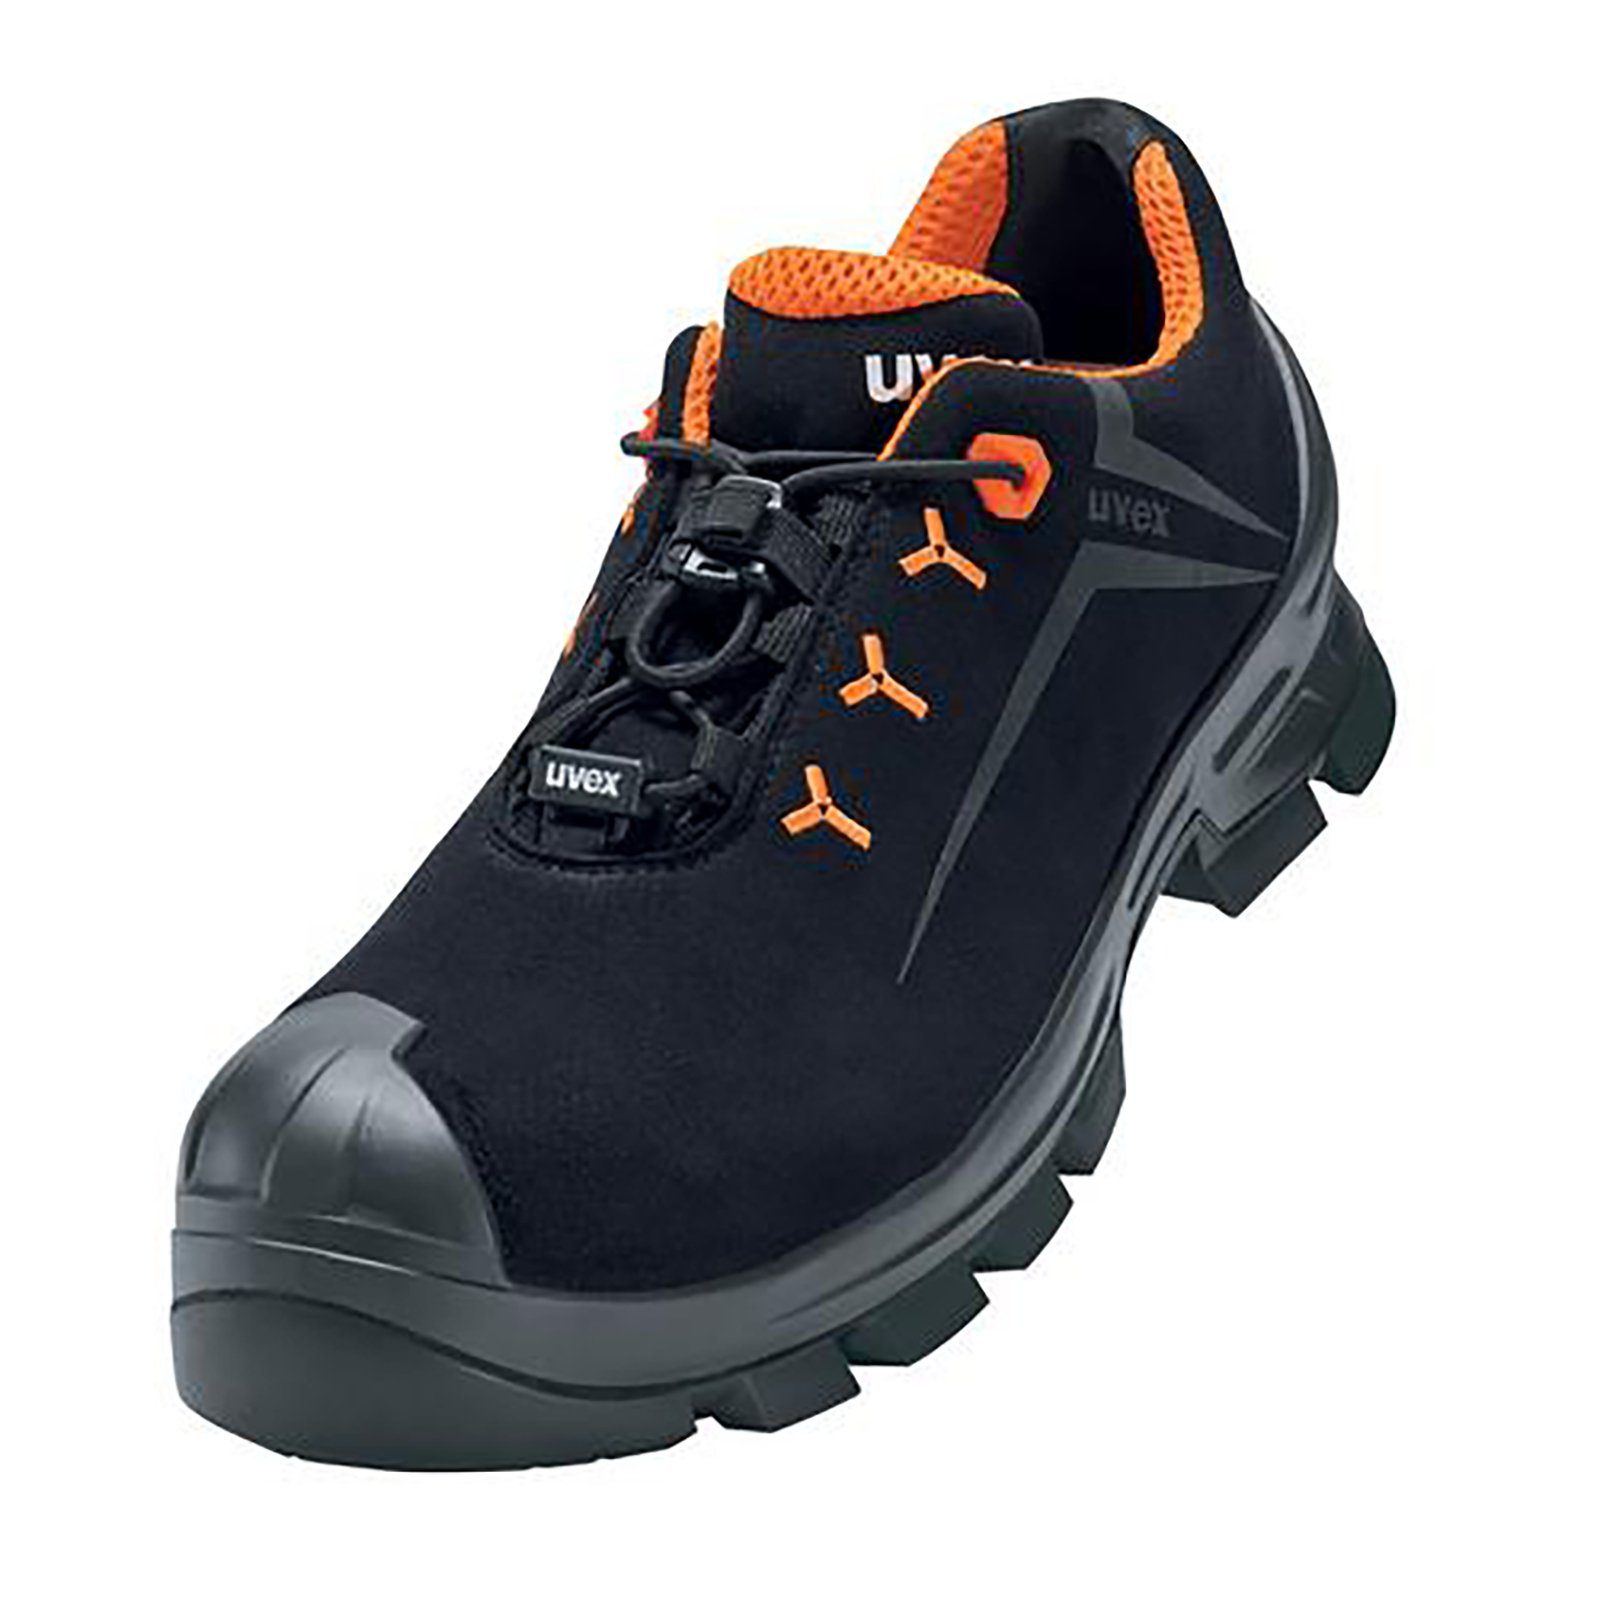 Uvex 2 MACSOLE® Halbschuhe S3 schwarz, orange Weite 12 Sicherheitsschuh